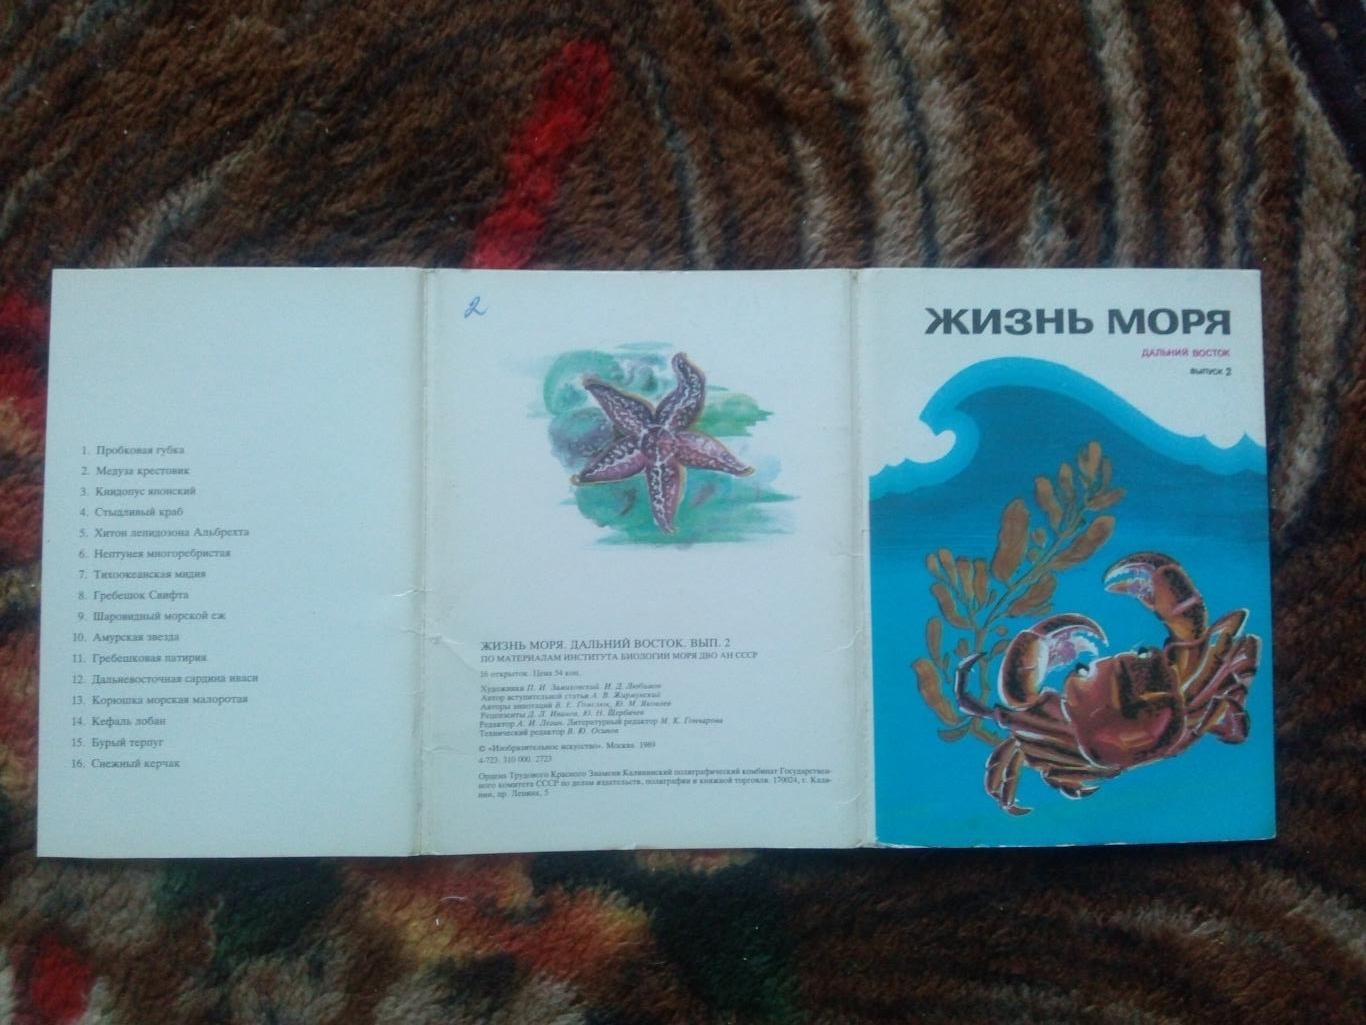 Жизнь моря (Дальний Восток) 1989 г. полный набор - 16 открыток (Выпуск № 2) 1